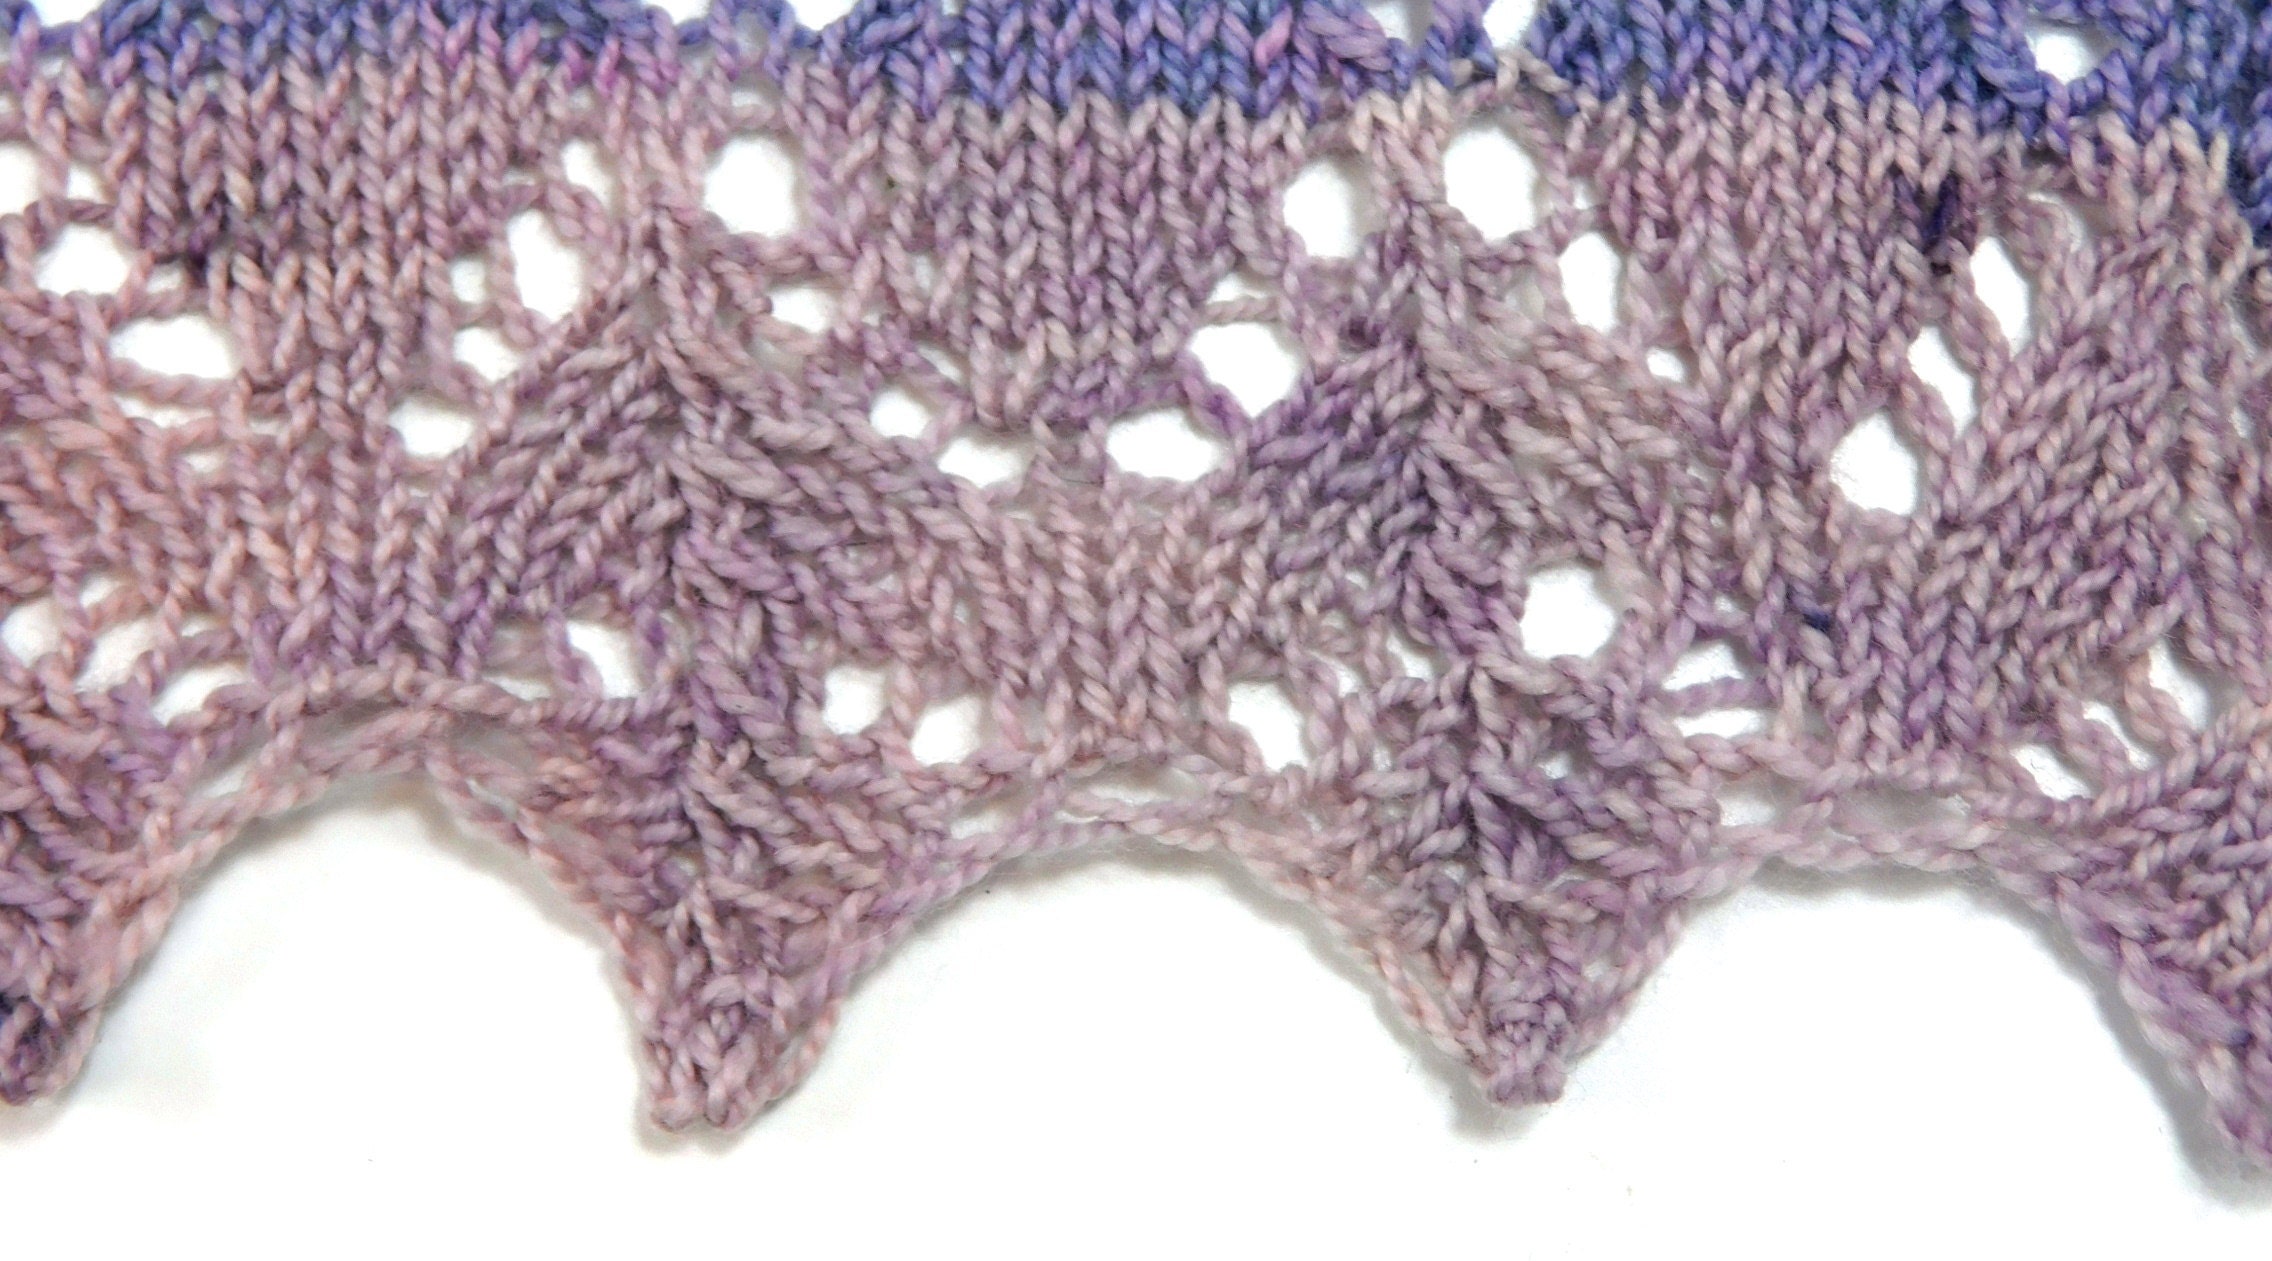 Horseshoe lace close up